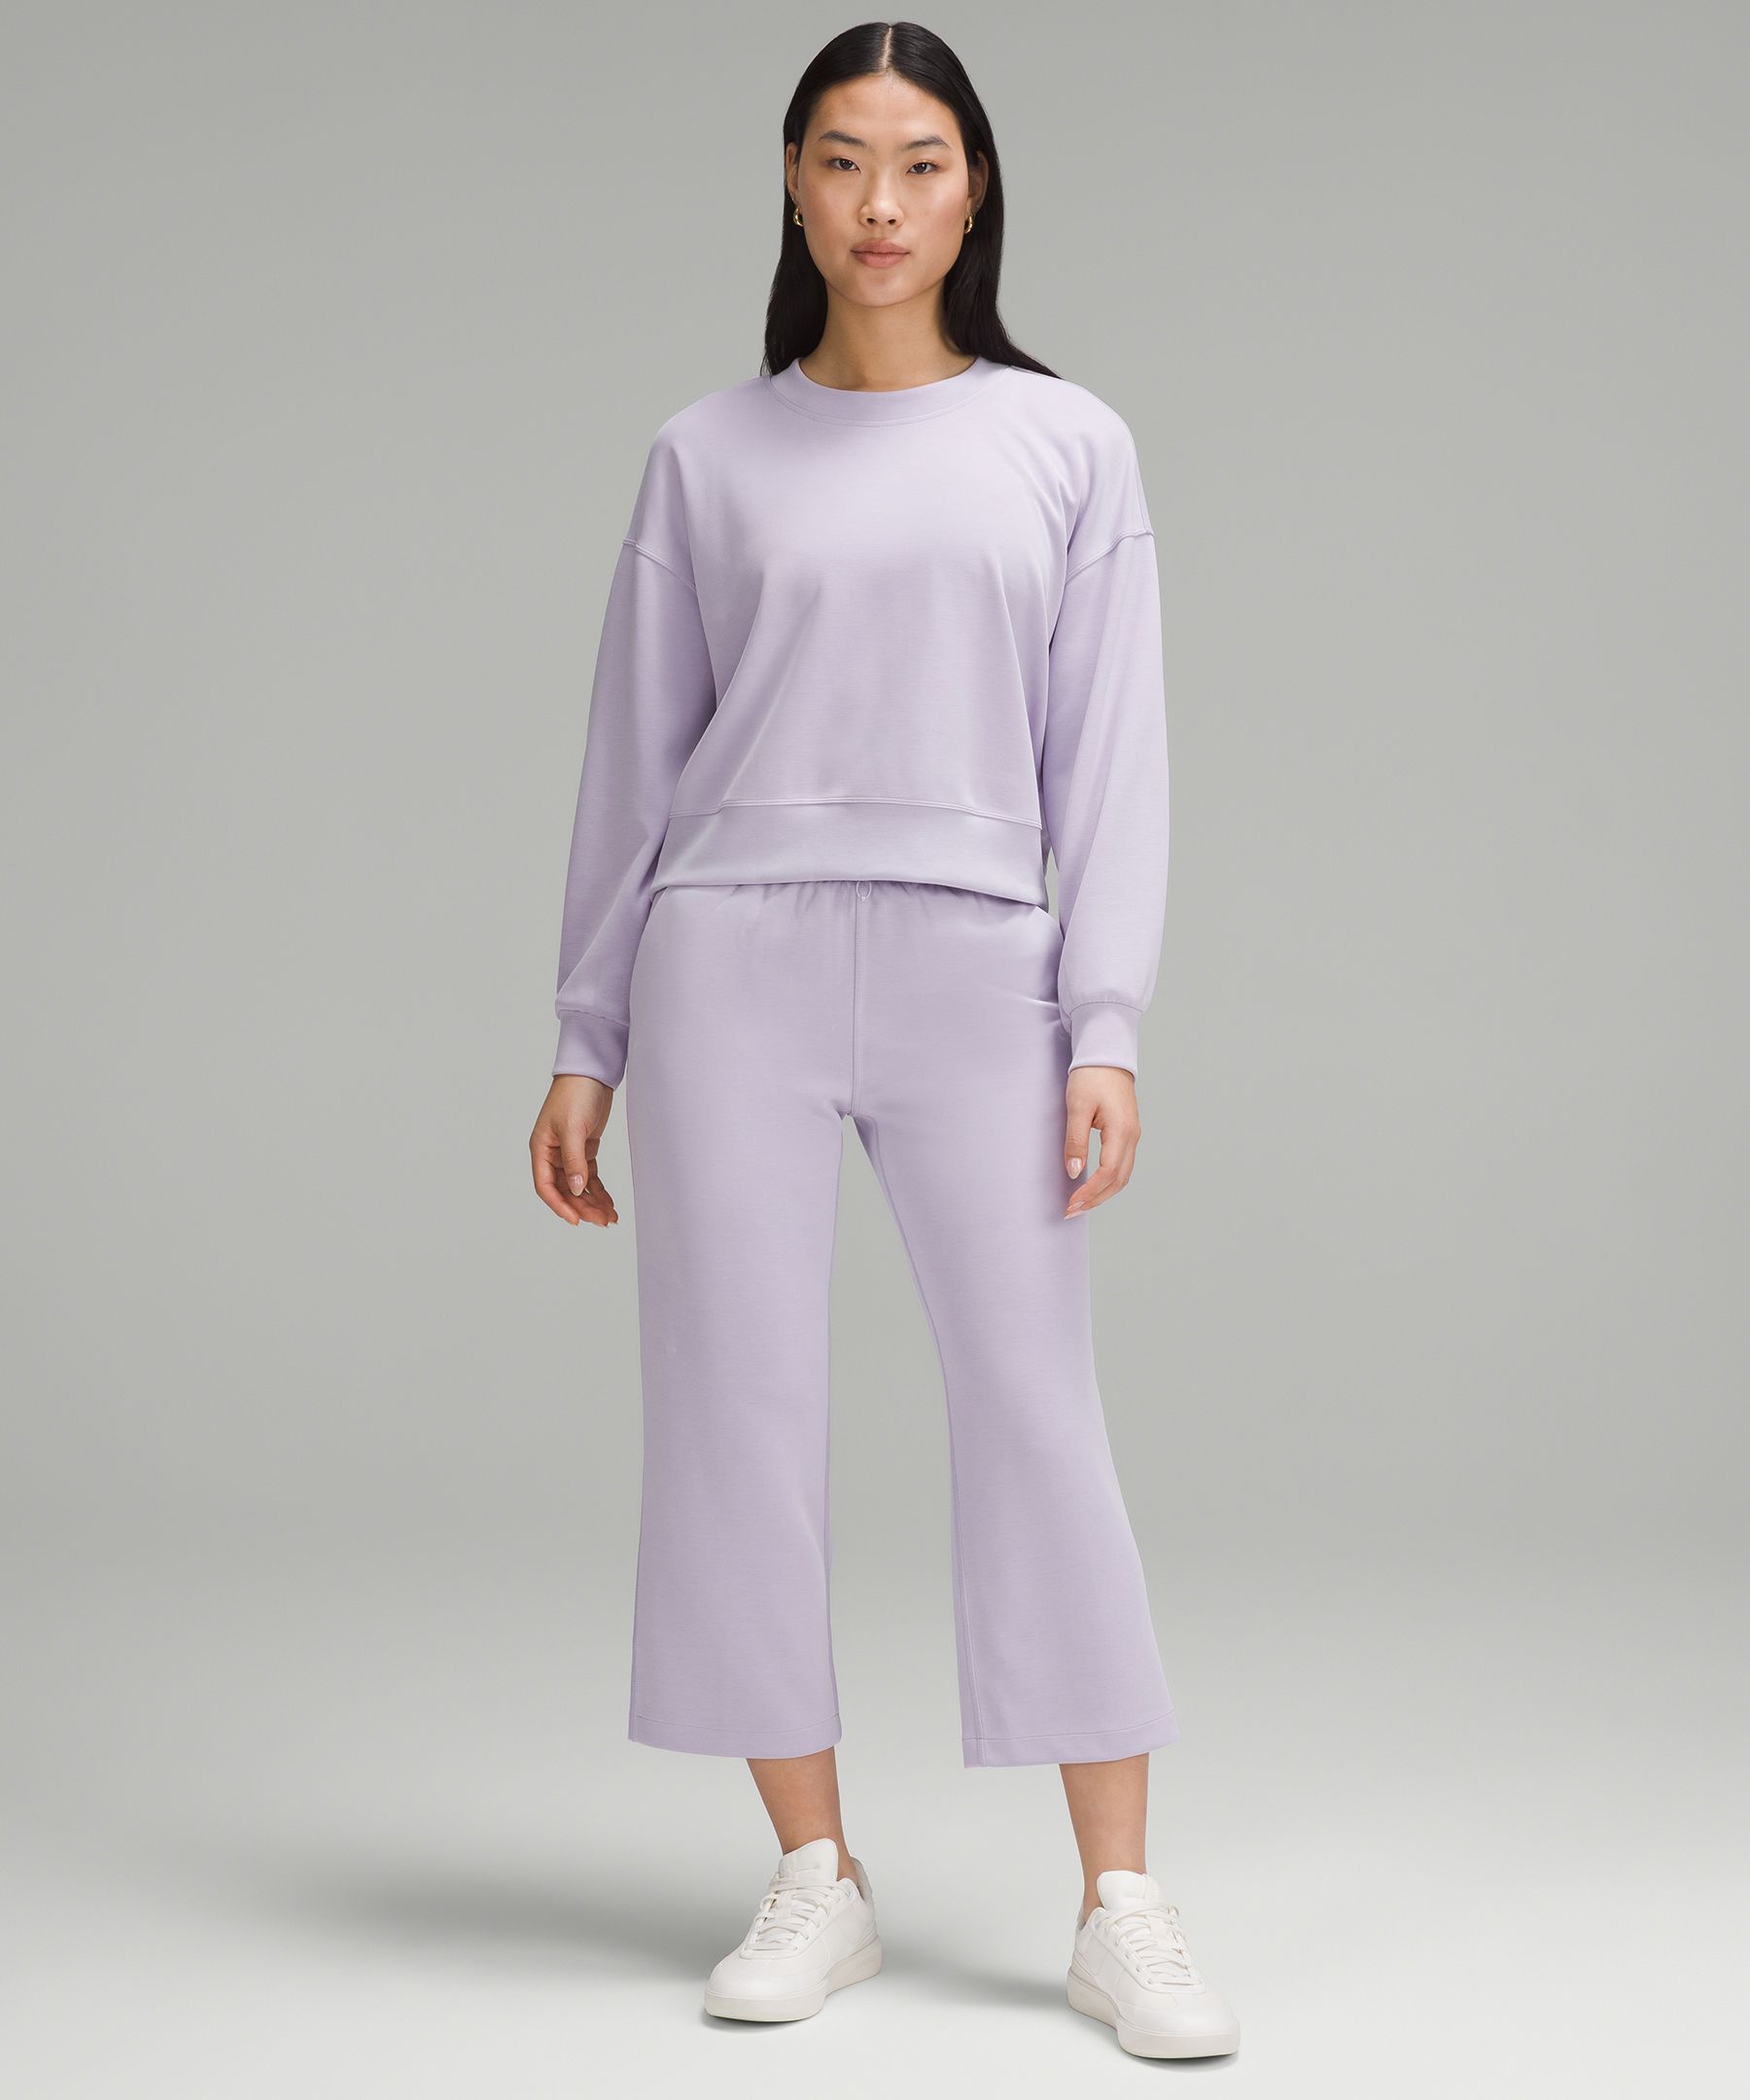 Lululemon Matching Set Purple Size 4 - $70 (44% Off Retail) - From Chloe